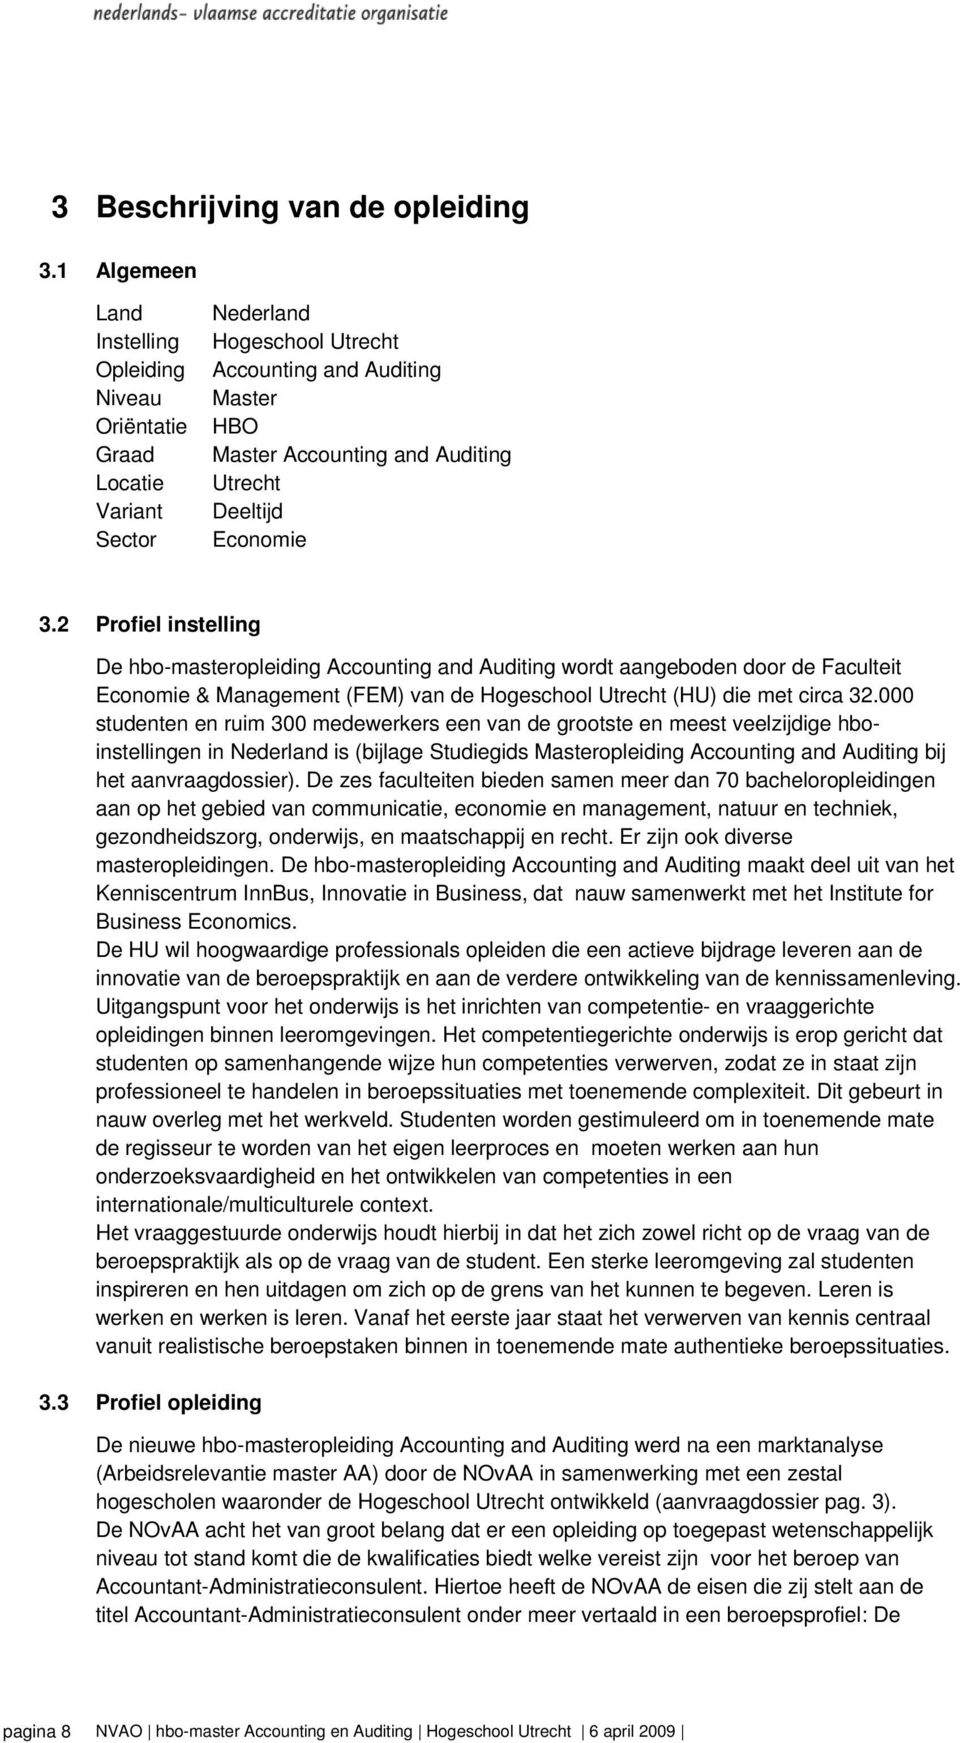 Economie 3.2 Profiel instelling De hbo-masteropleiding Accounting and Auditing wordt aangeboden door de Faculteit Economie & Management (FEM) van de Hogeschool Utrecht (HU) die met circa 32.